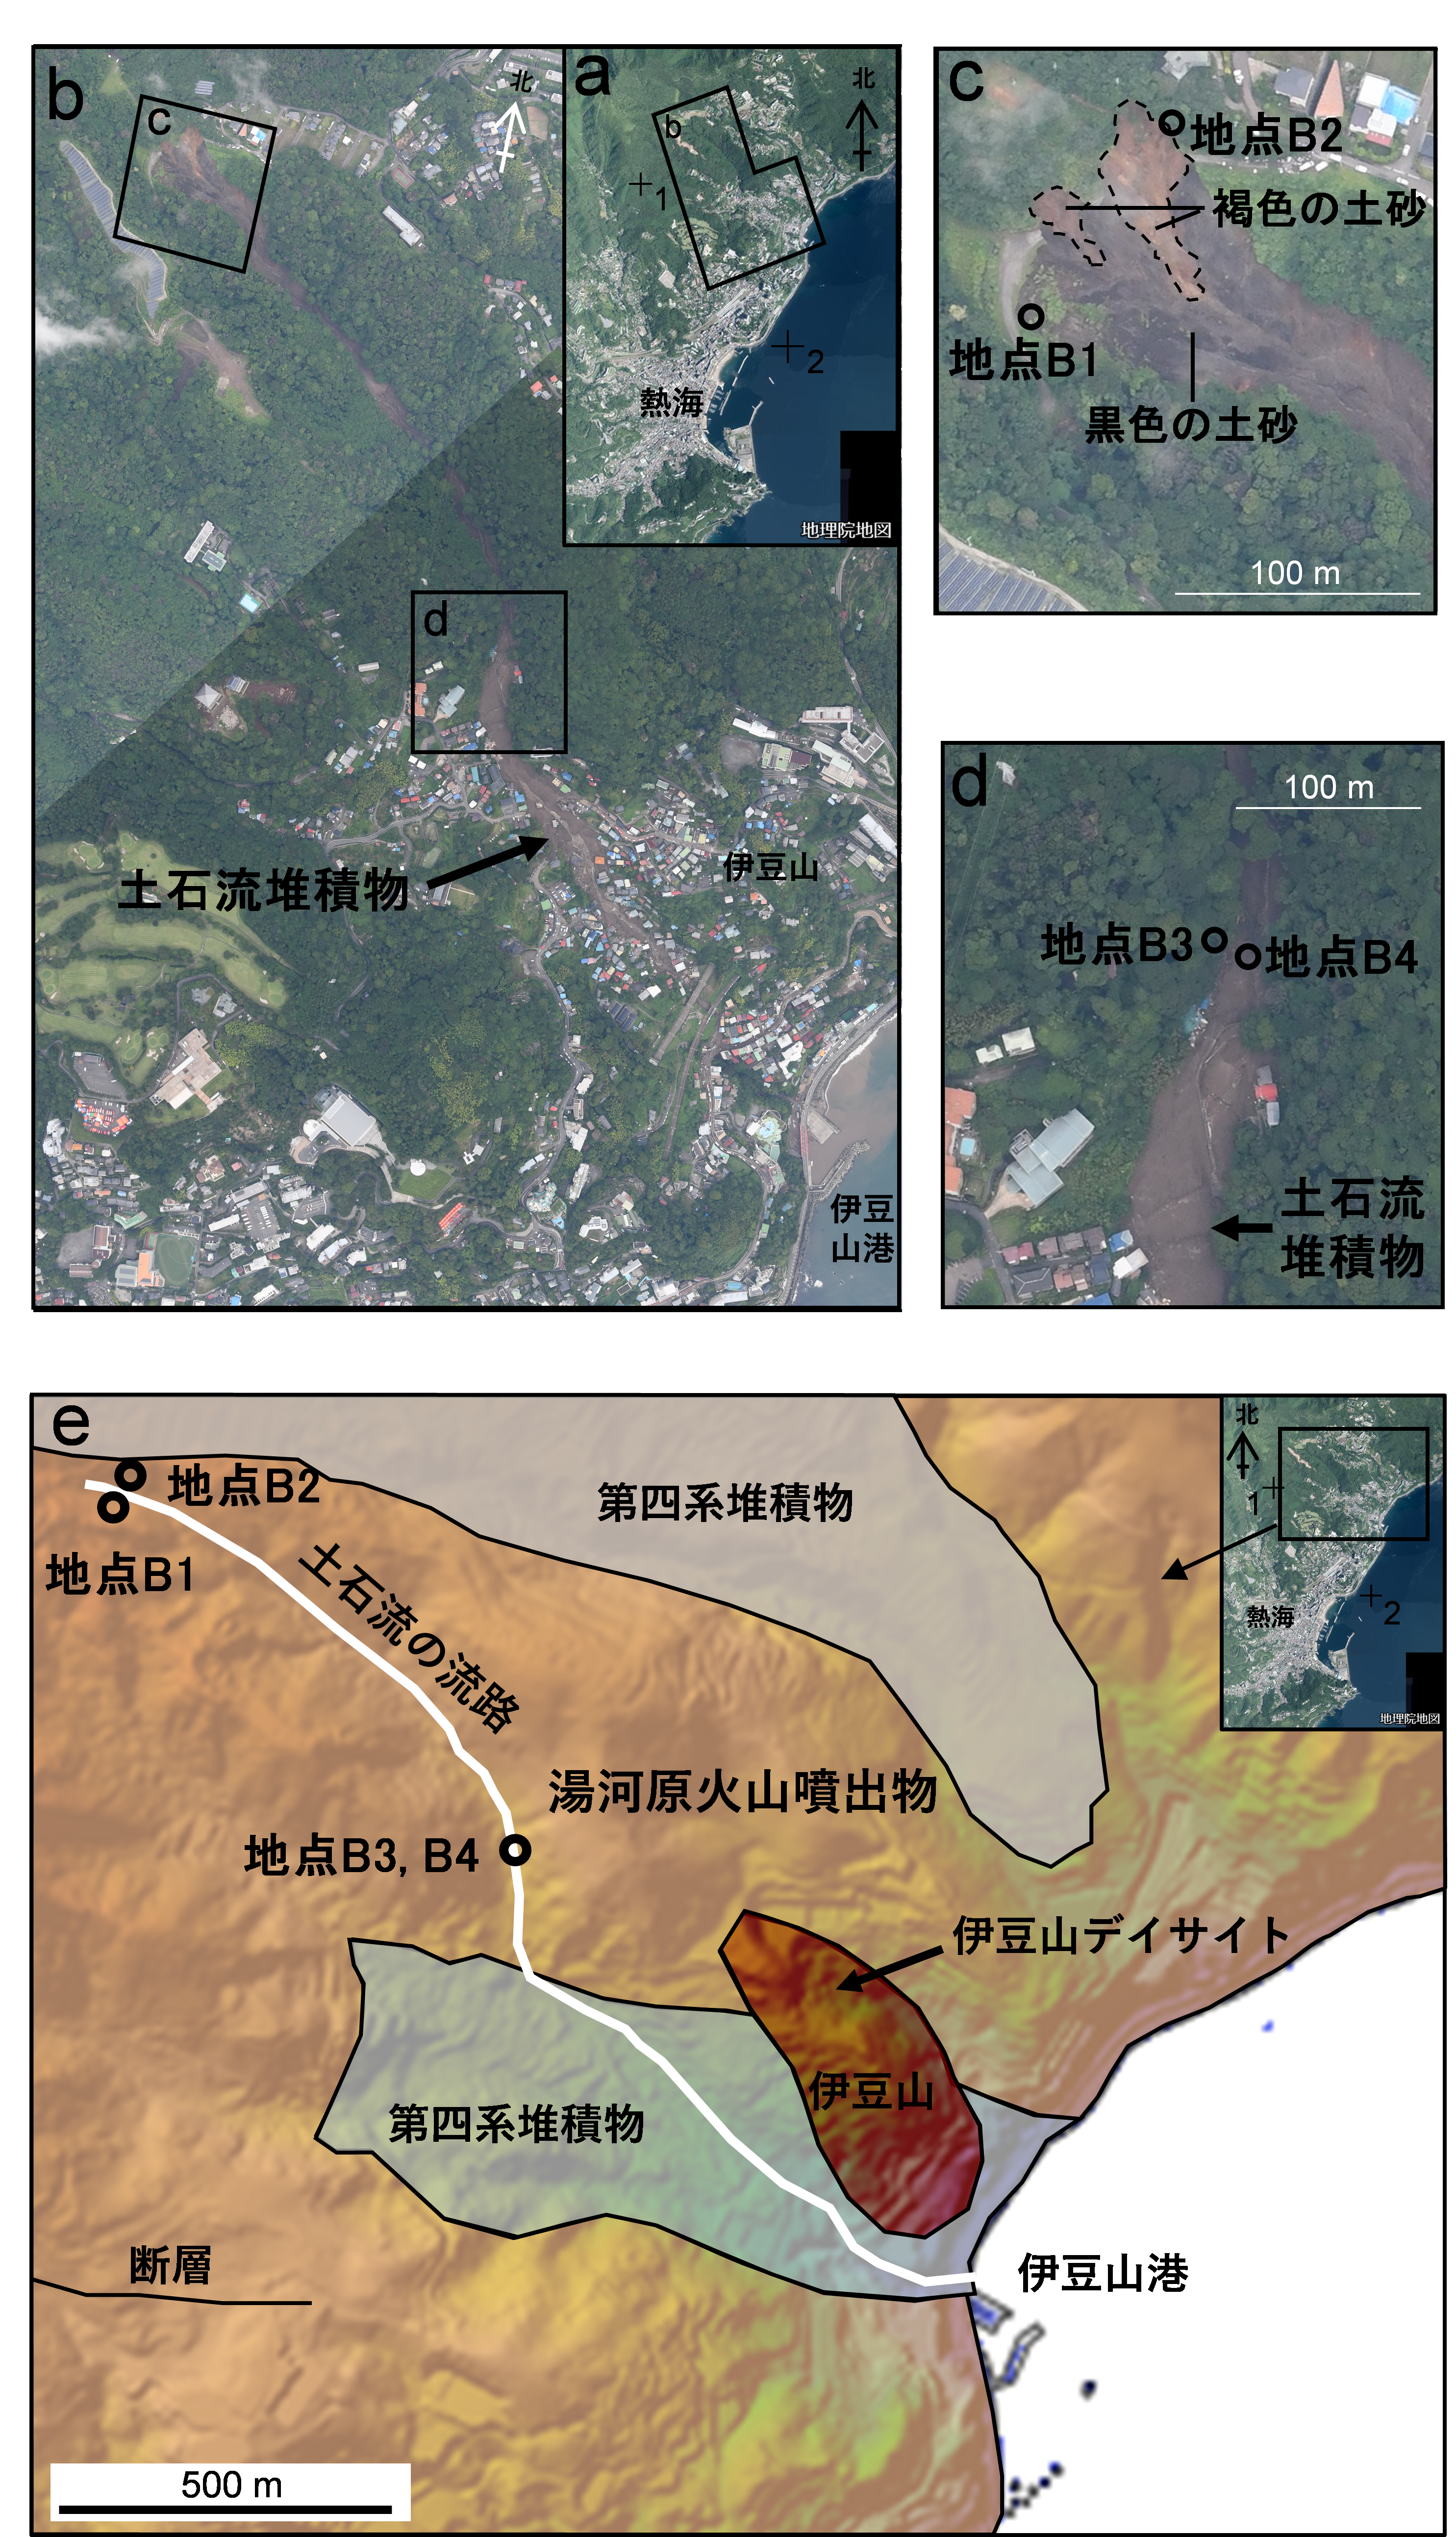 図1　熱海市伊豆山地区の土石流の流路と試料採取地点と地質．a―d: 土石流の流路と試料採取地点．e: 地質図．画像は国土地理院（2021）の写真番号48156と48158を使用，https://www.gsi.go.jp/BOUSAI/R3_0701_heavyrain.html, 2022年3月1日引用．地質図は及川・石塚 （2011）の地質図と産業技術総合研究所地質調査総合センター （2021）の地質図 Naviのシームレス地質図v2に基づいて作成．aとeの十字線1と2の緯度・経度はそれぞれ北緯35度7分0秒・東経139度4分0秒と北緯35度6分0秒・東経139度5分0秒． の画像